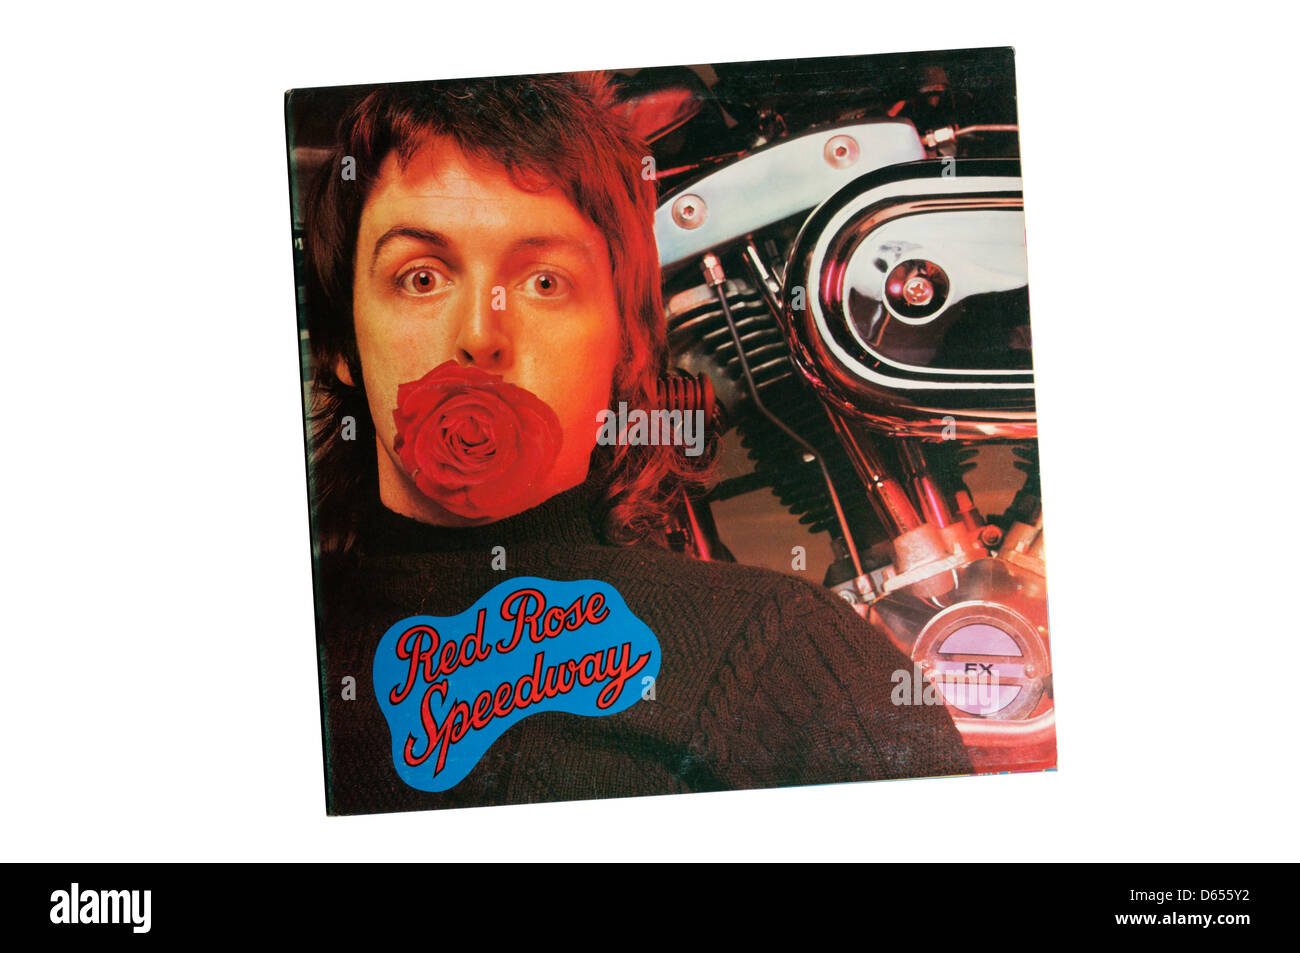 Red Rose Speedway, lanzado en 1973, fue el segundo álbum de Paul McCartney y Wings. Foto de stock